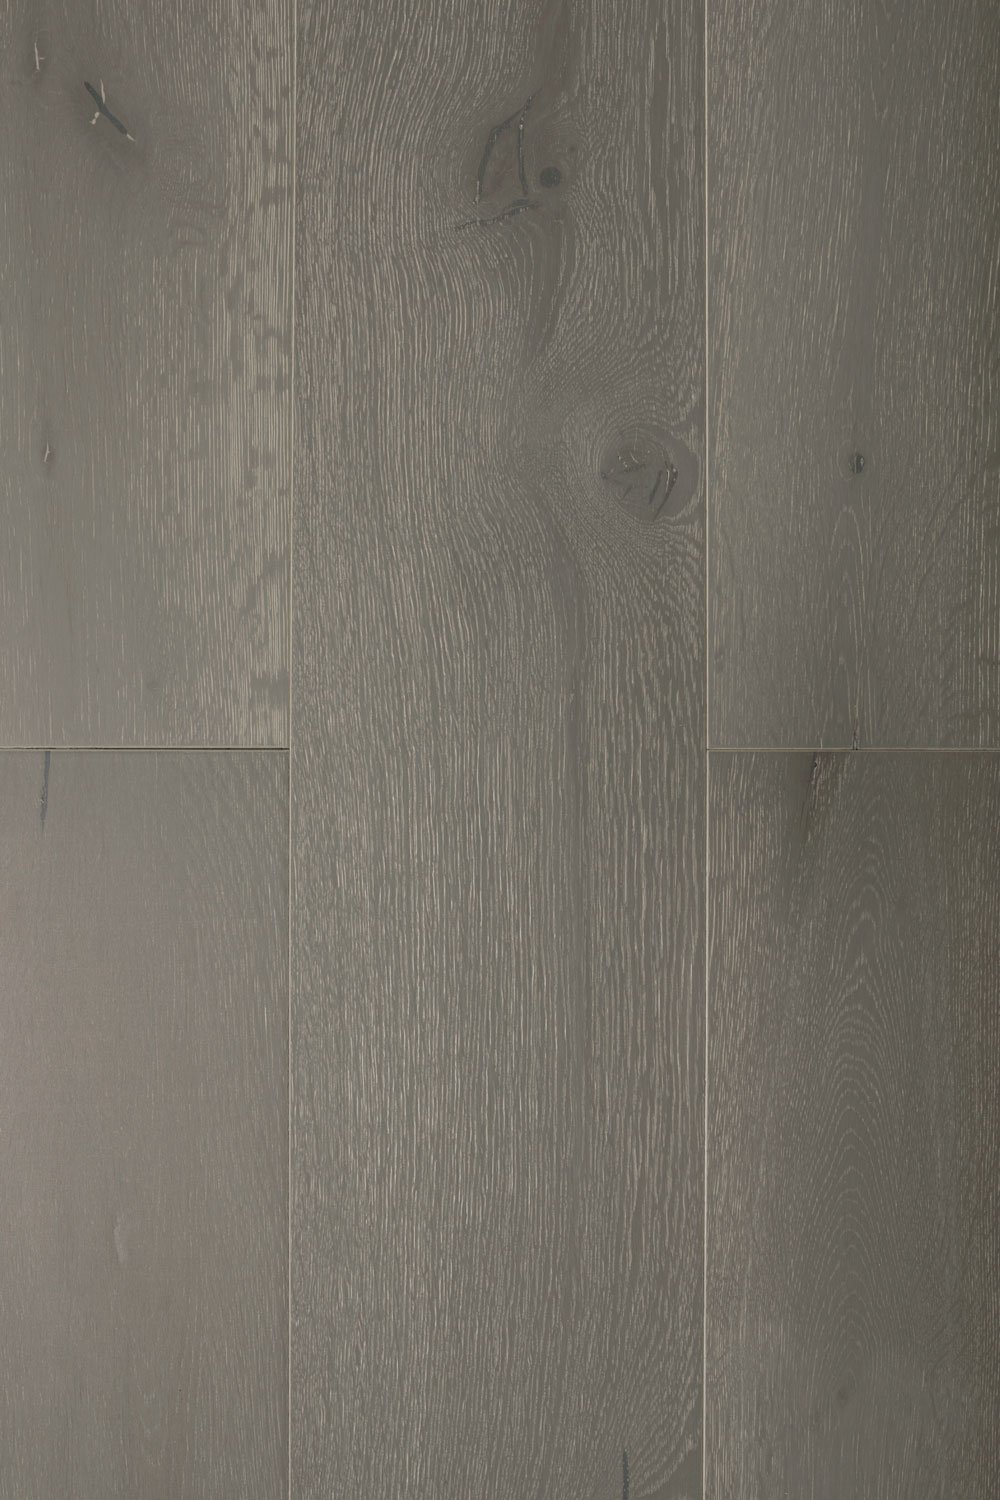 Siena 7-1/2″ Wide – White Oak Engineered Hardwood Flooring